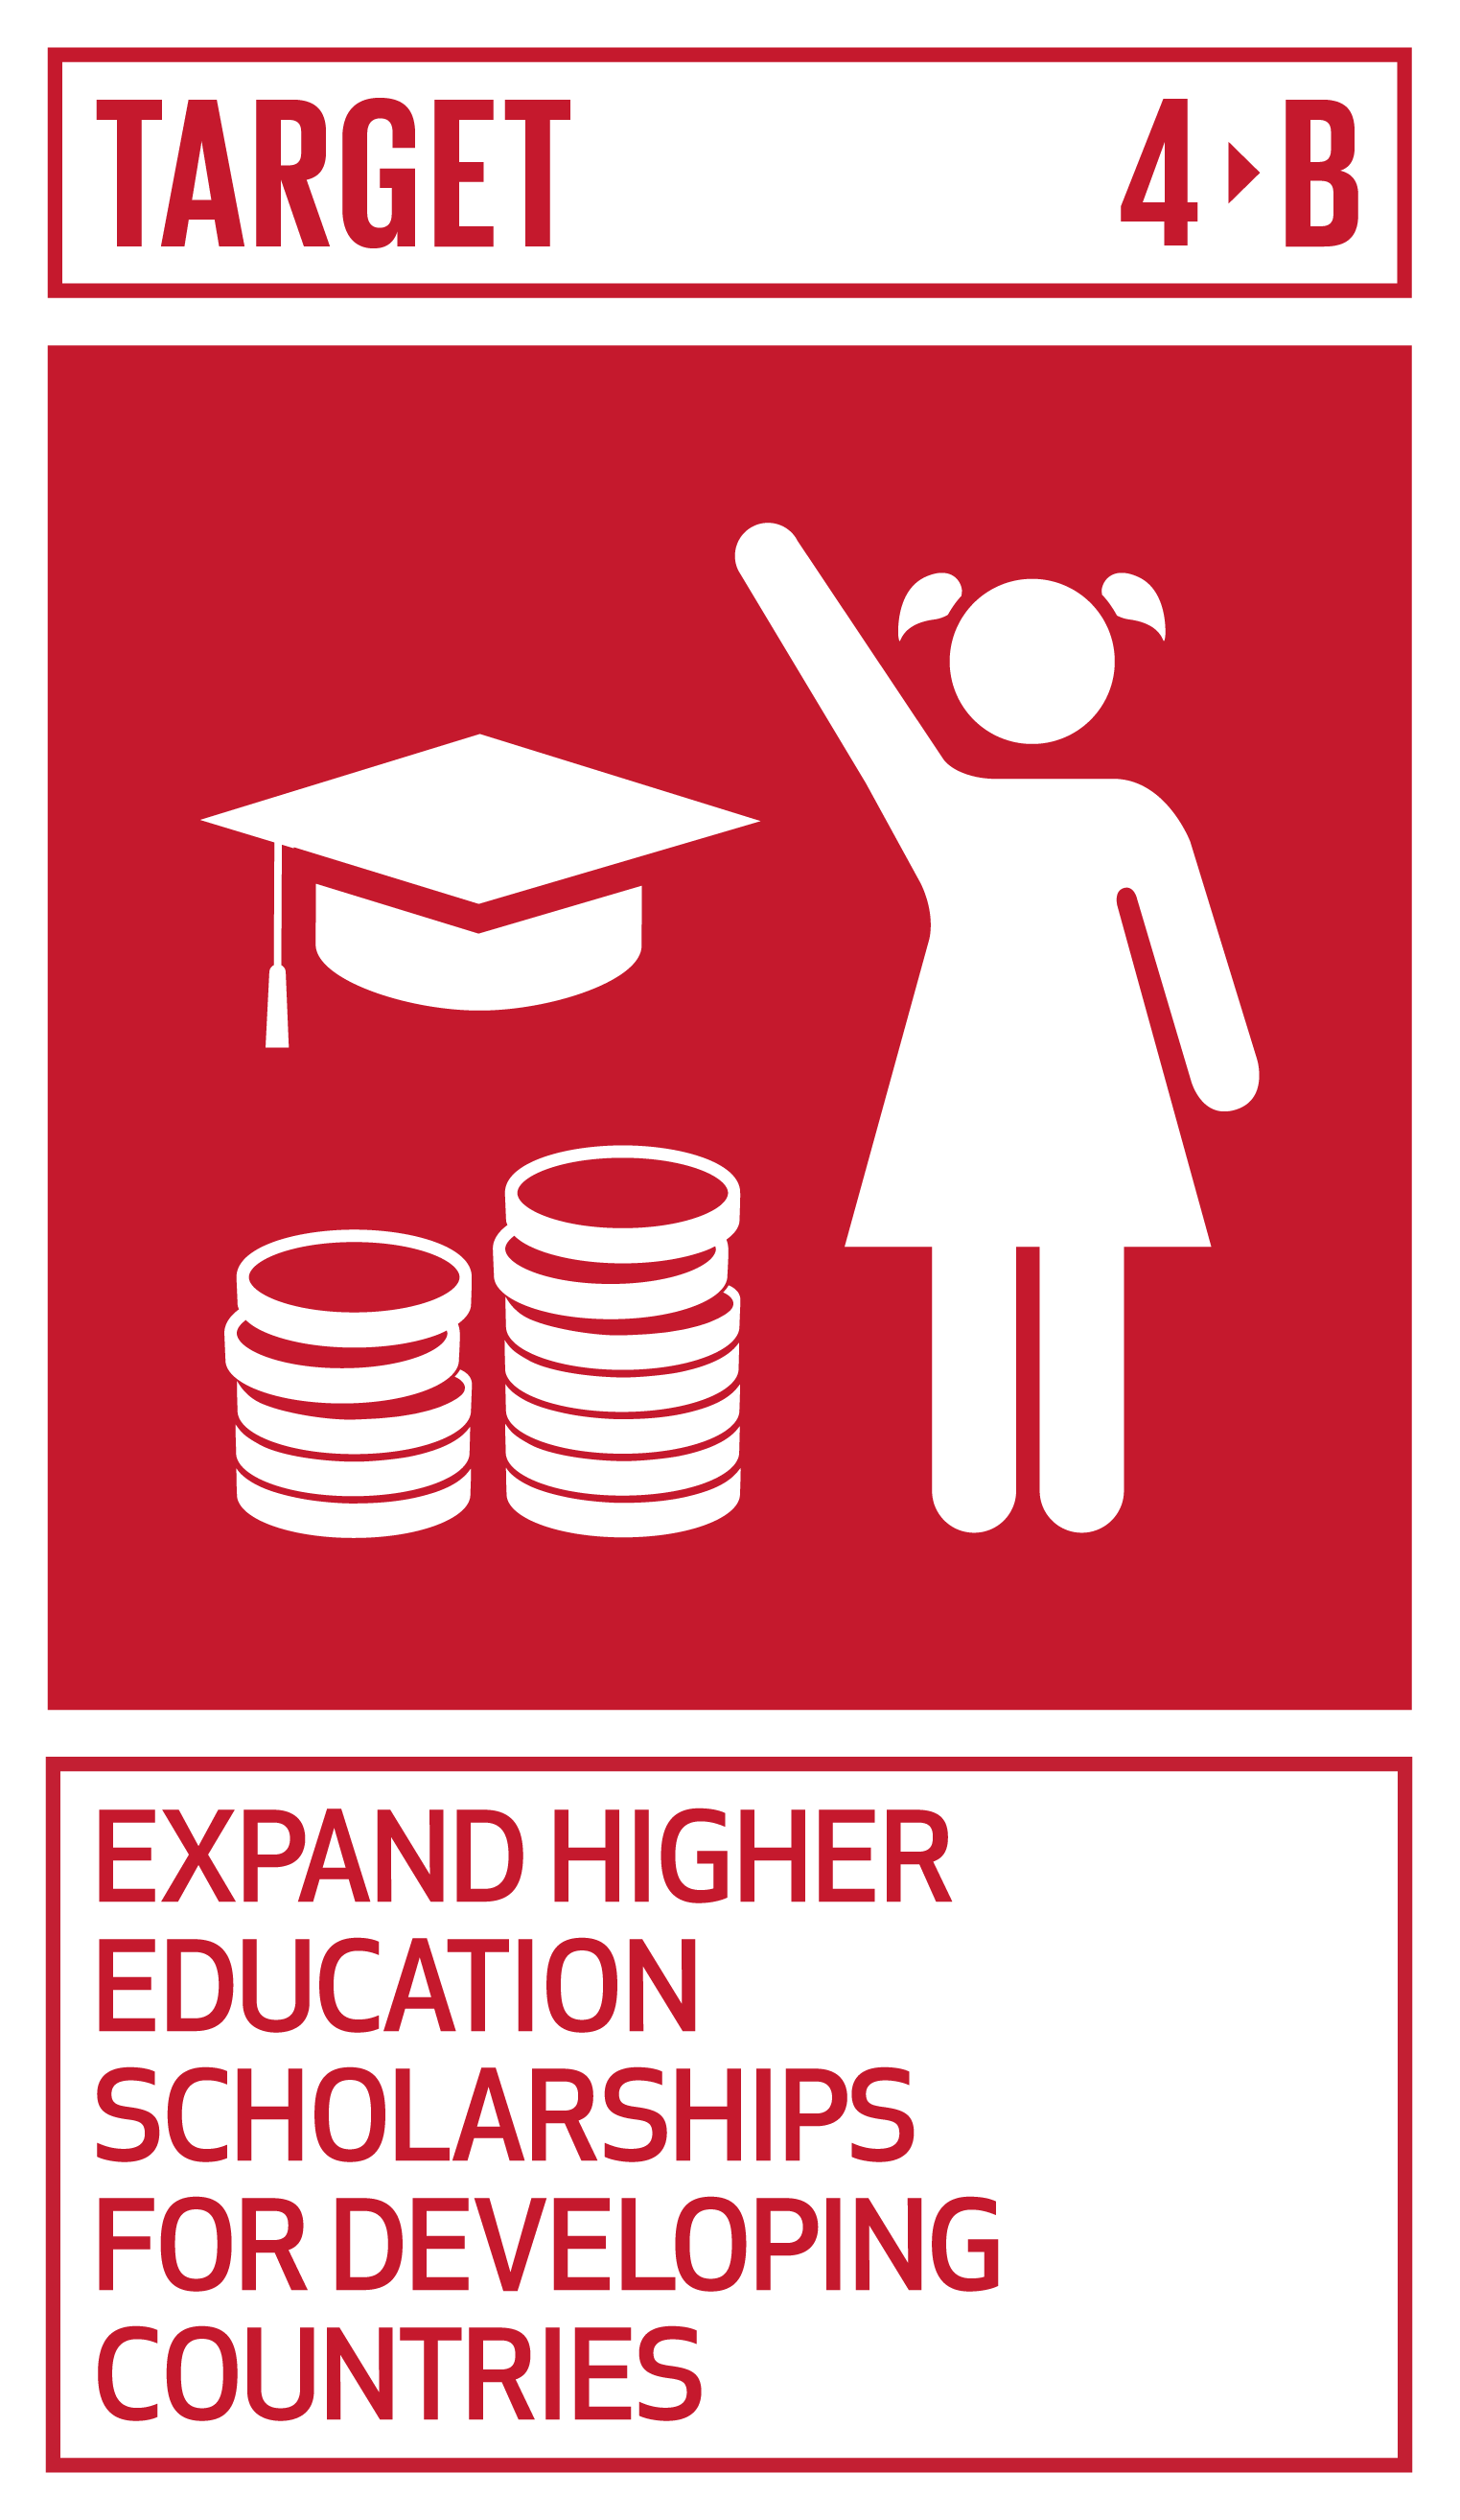 Goal,target,永續發展目標SDGs4目標4.B擴大對開發中國家的高等教育獎學金